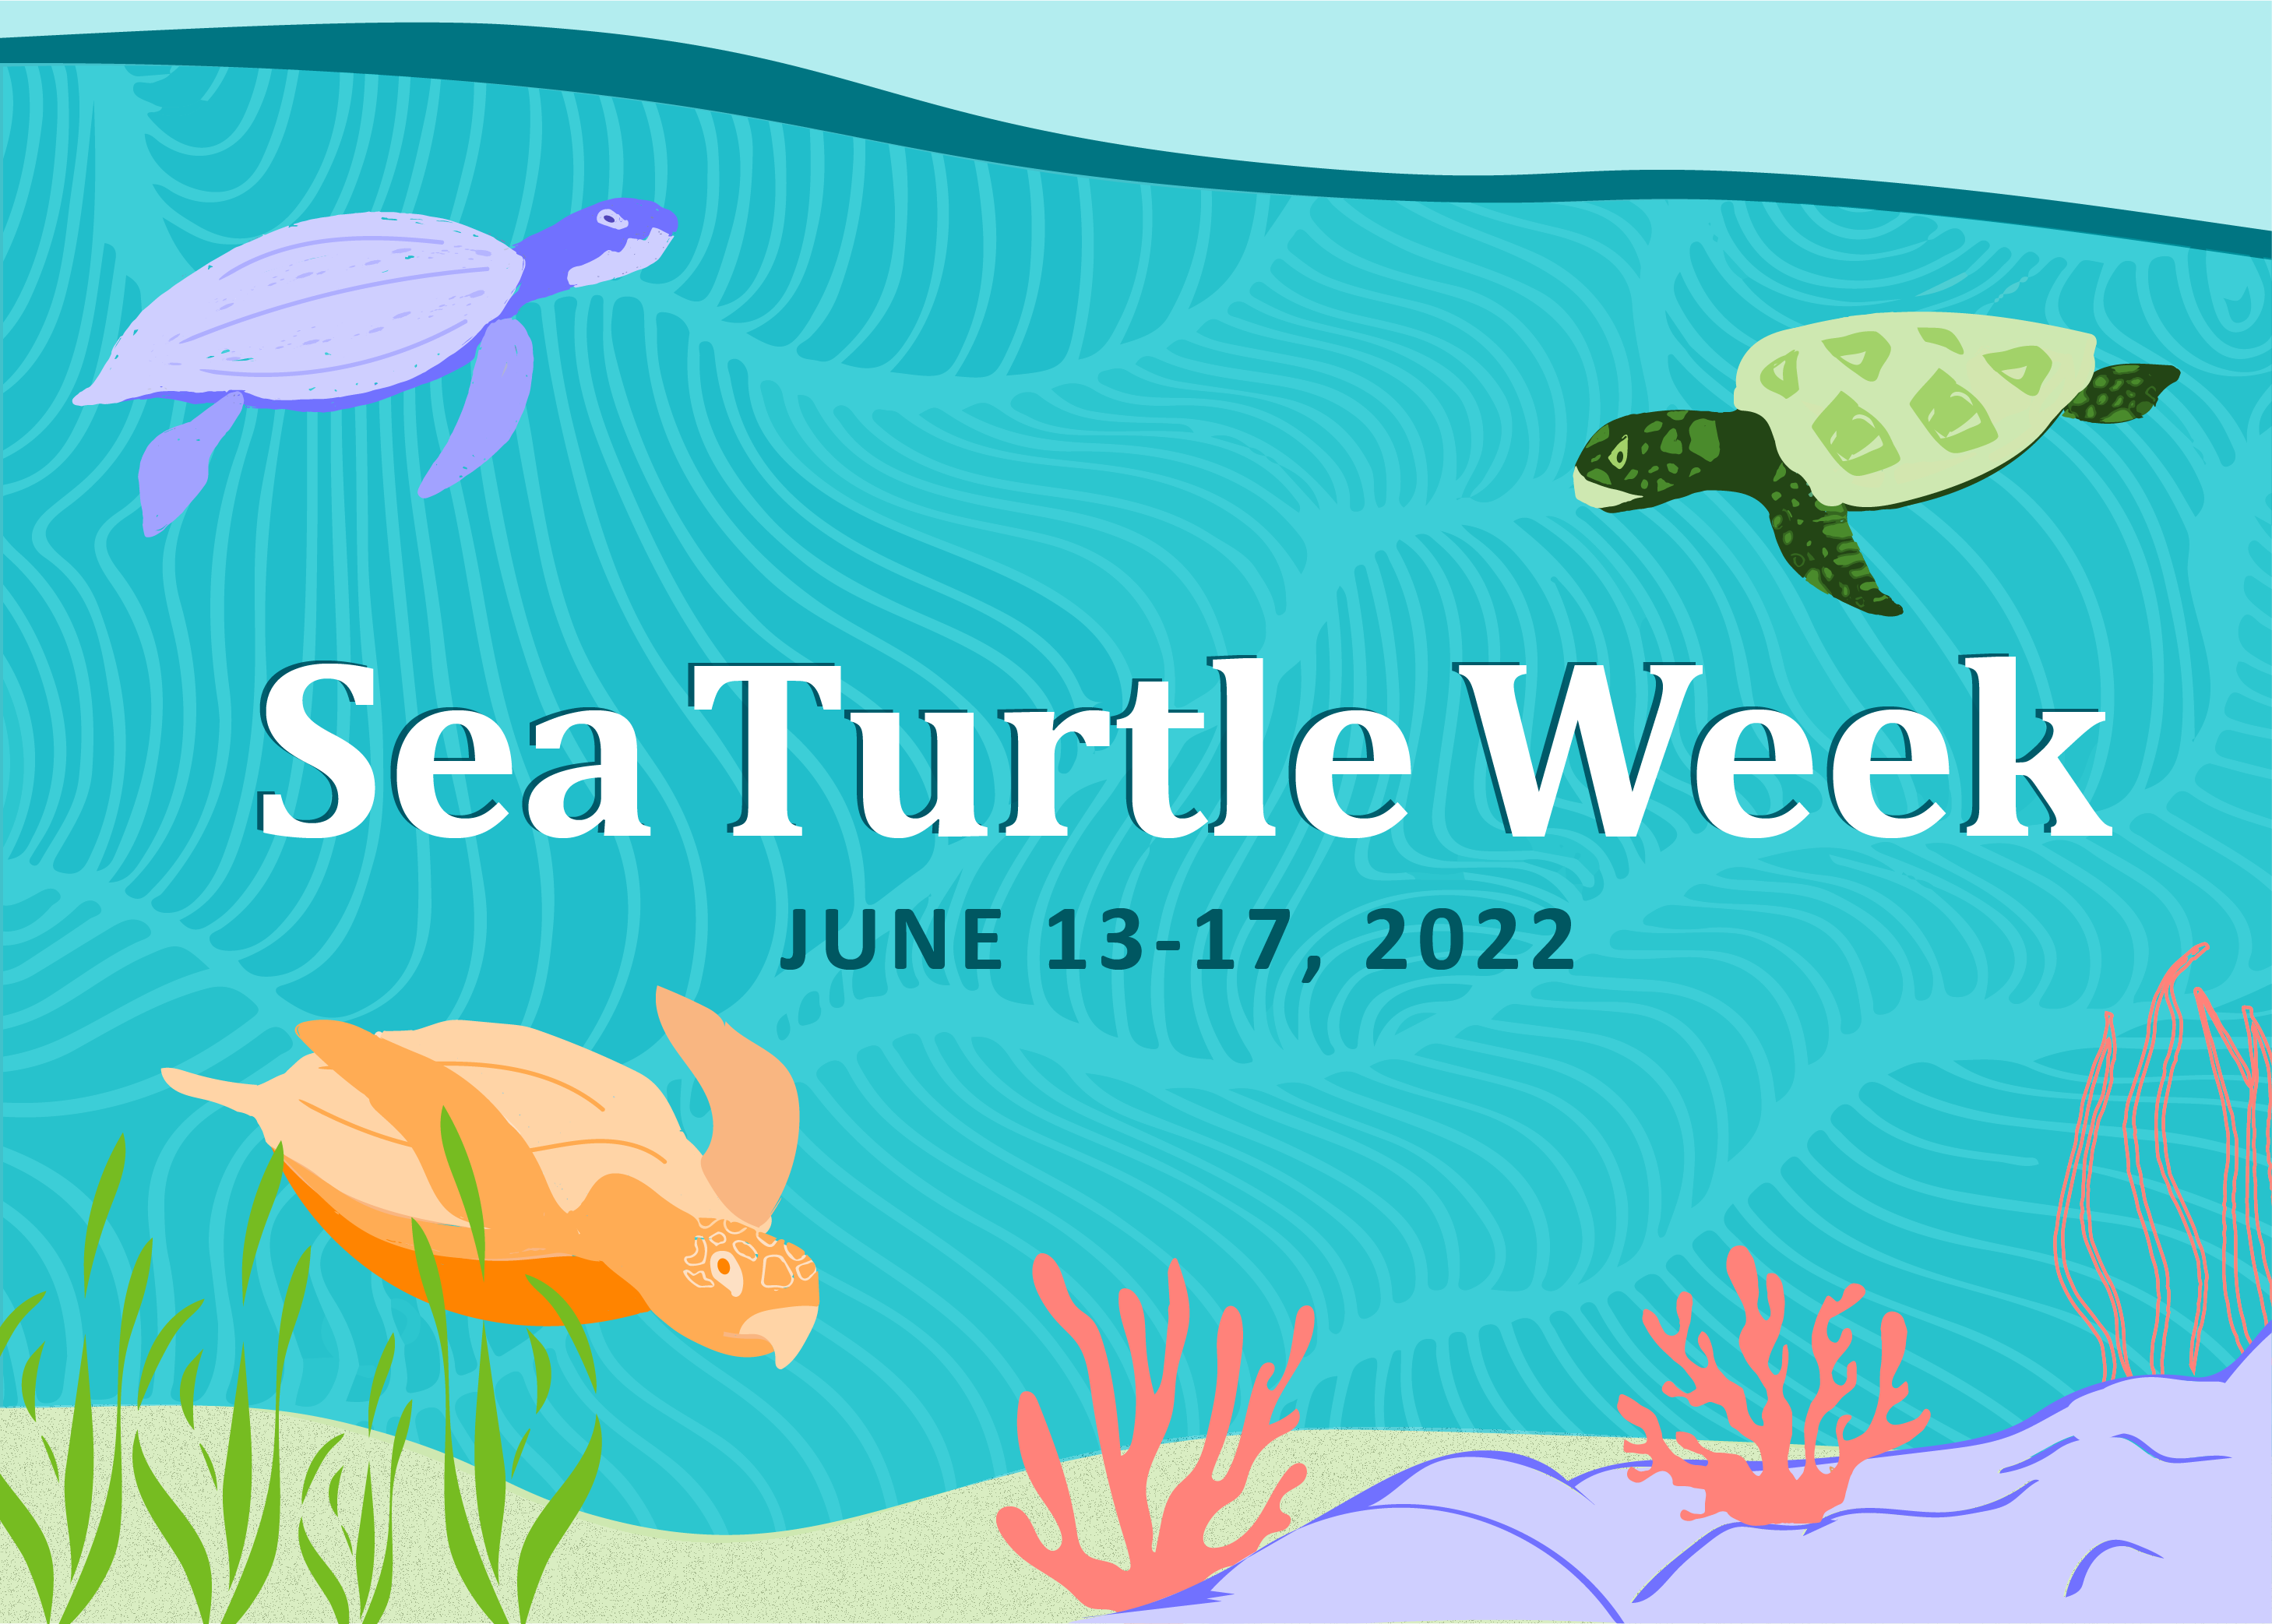 Image: Sea Turtle Week 2022